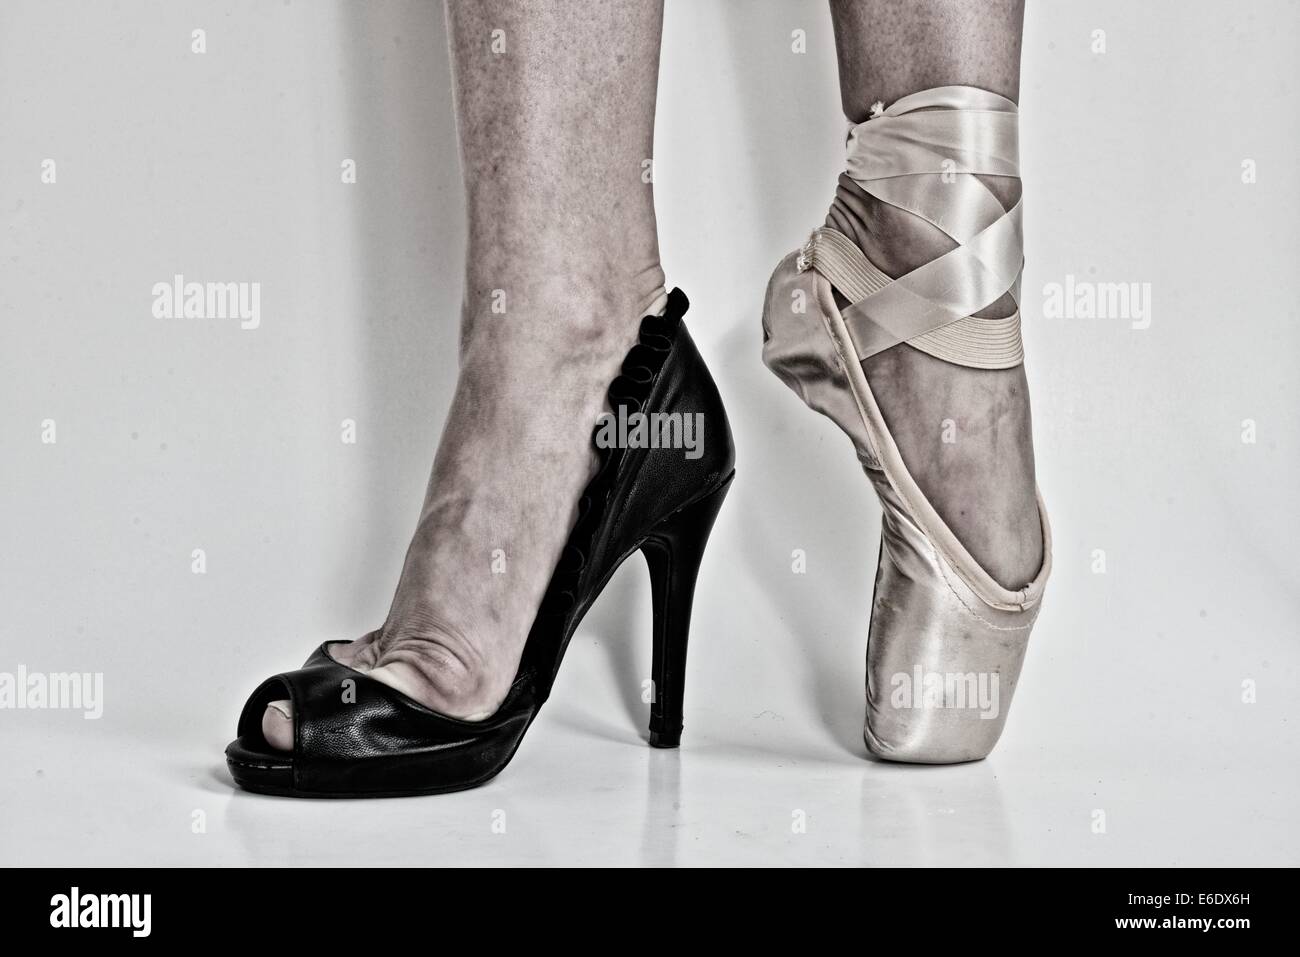 Les jambes d'une ballerine avec une chaussure noire dans l'un des pieds et une pointe de chaussures de ballet dans l'autre. Banque D'Images